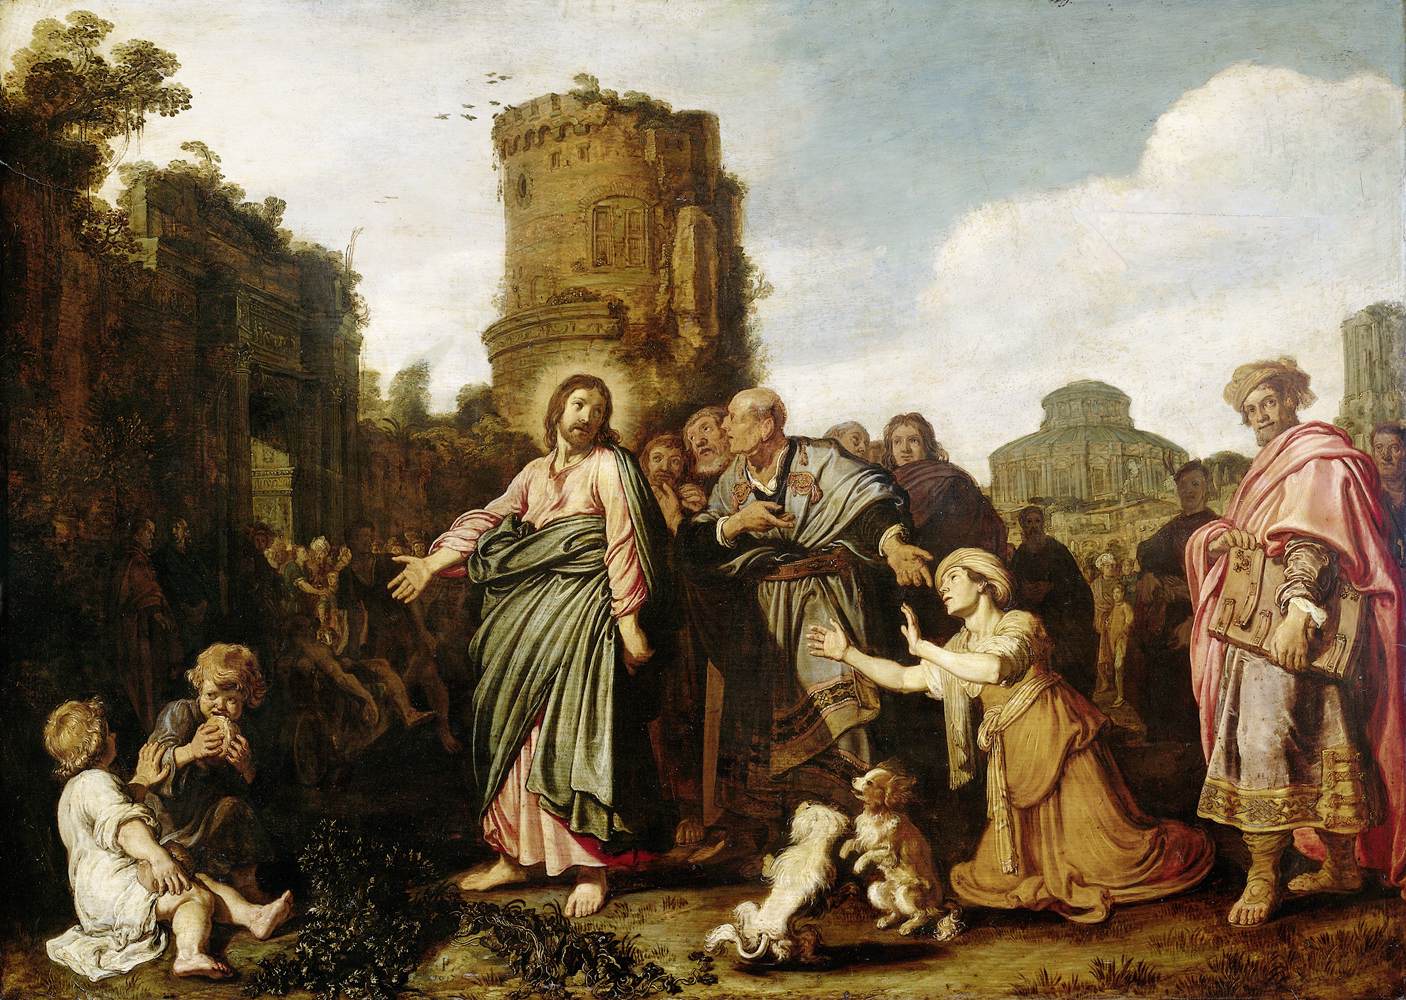 المسيح وامرأة كنعان by Pieter Lastman - 1617 م - 76,8 x 106,6  سم 